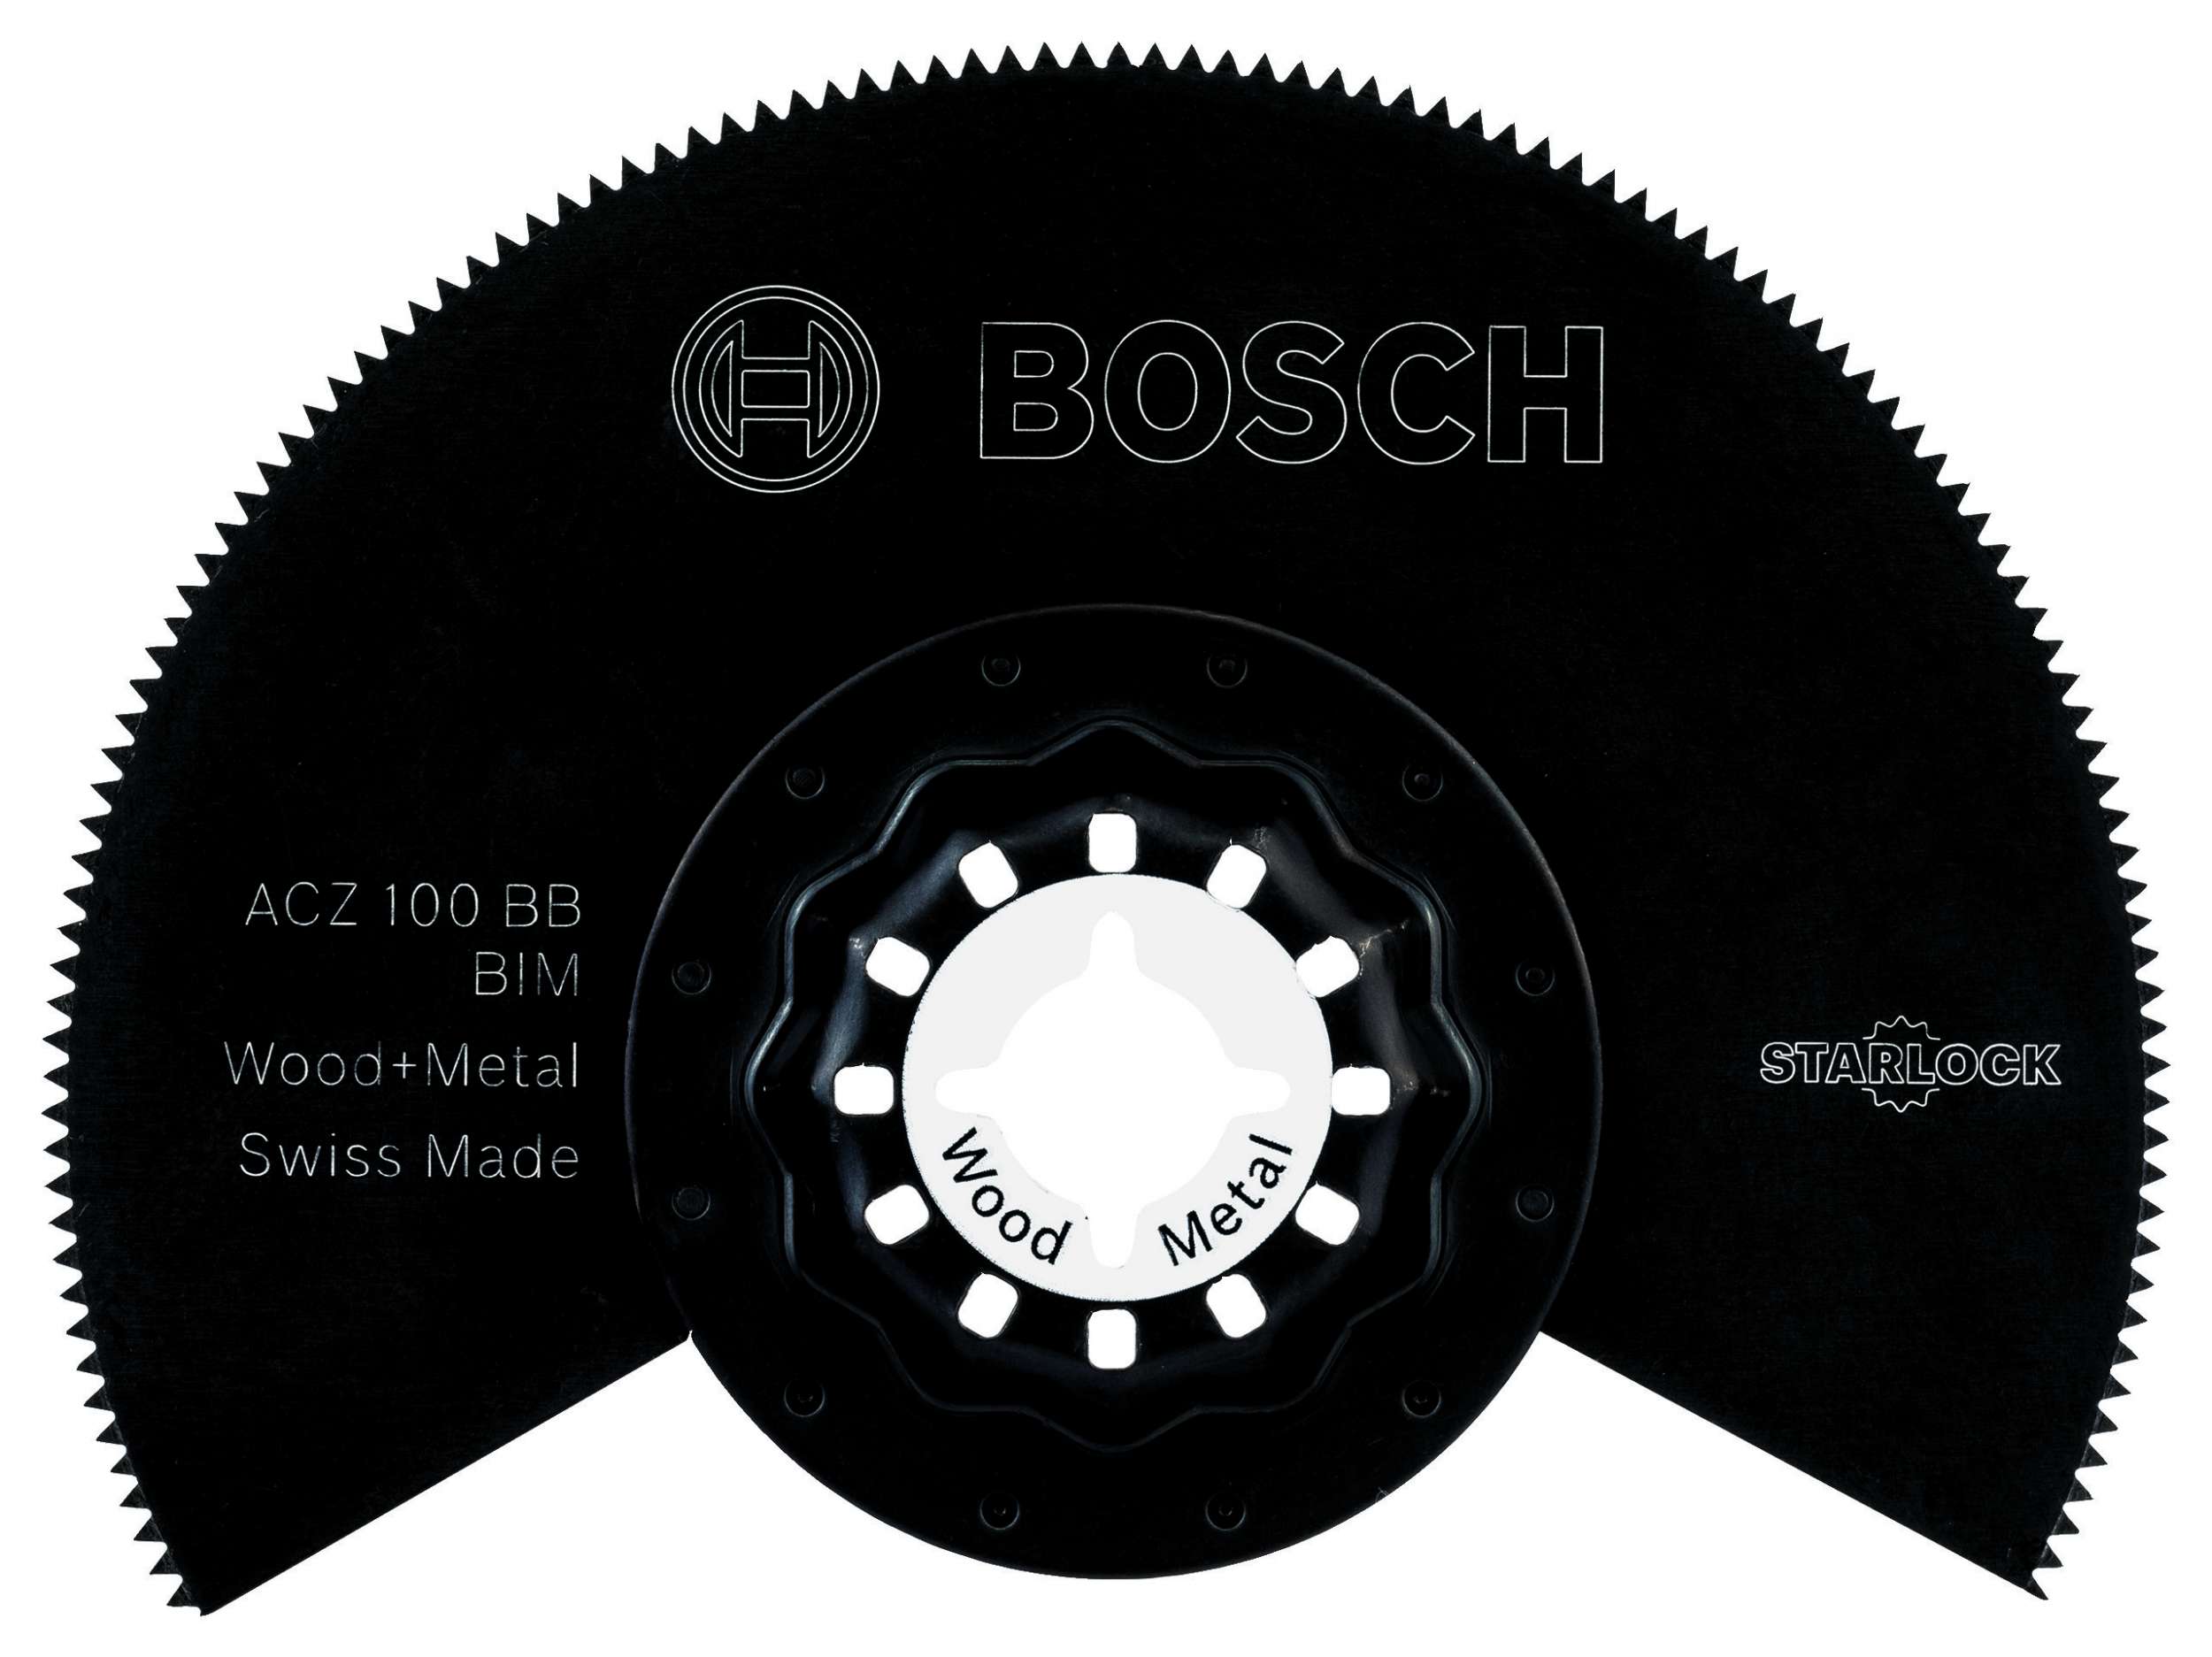 Bosch - Starlock - ACZ 100 BB - BIM Ahşap ve Metal İçin Segman Testere Bıçağı, Bombeli 1'li